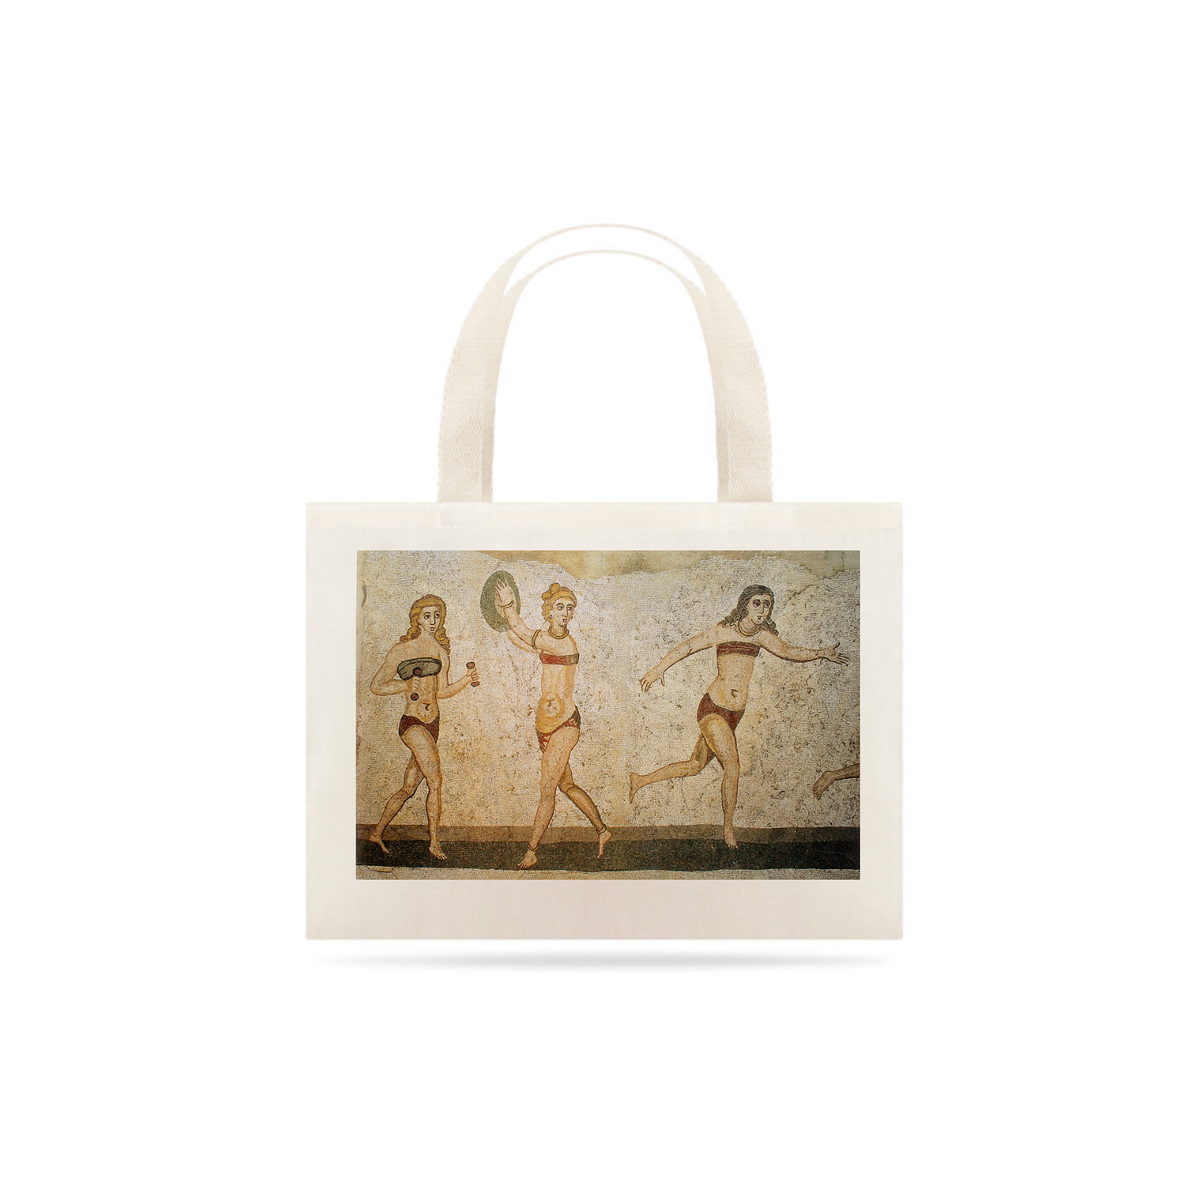 Nome do produto: Bikini girls mosaic, Villa del Casale, Piazza Armerina, Sicily, Italy.